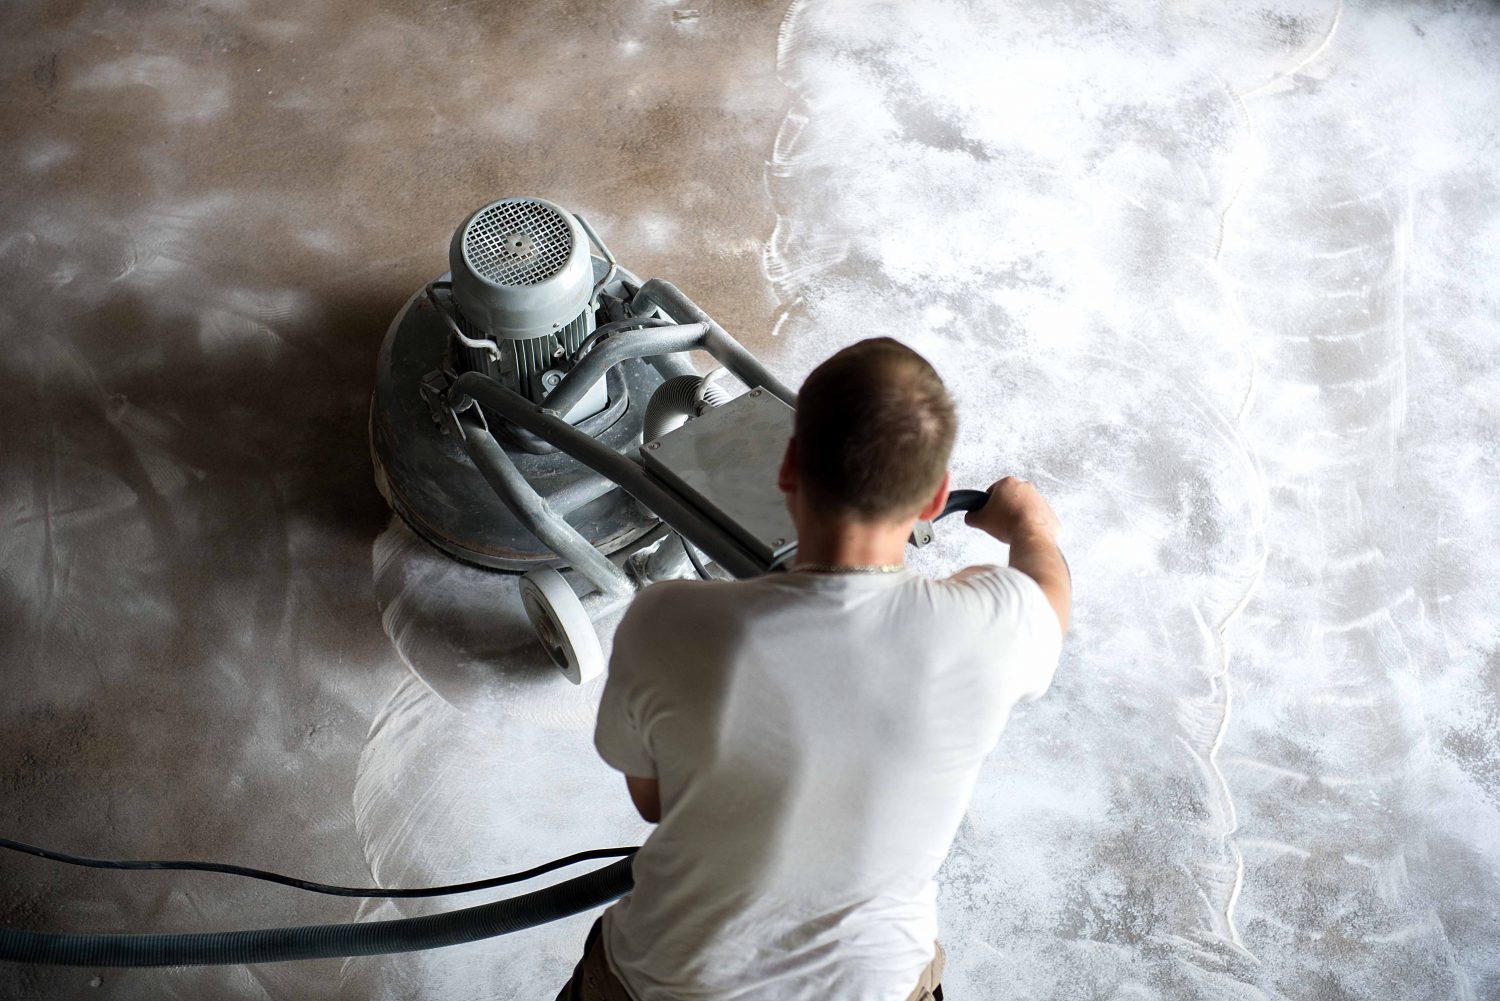 Použití velké profesionální brusky je rovněž jednou z možností, jak docílit dokonale rovného a hladkého povrchu betonových podlah